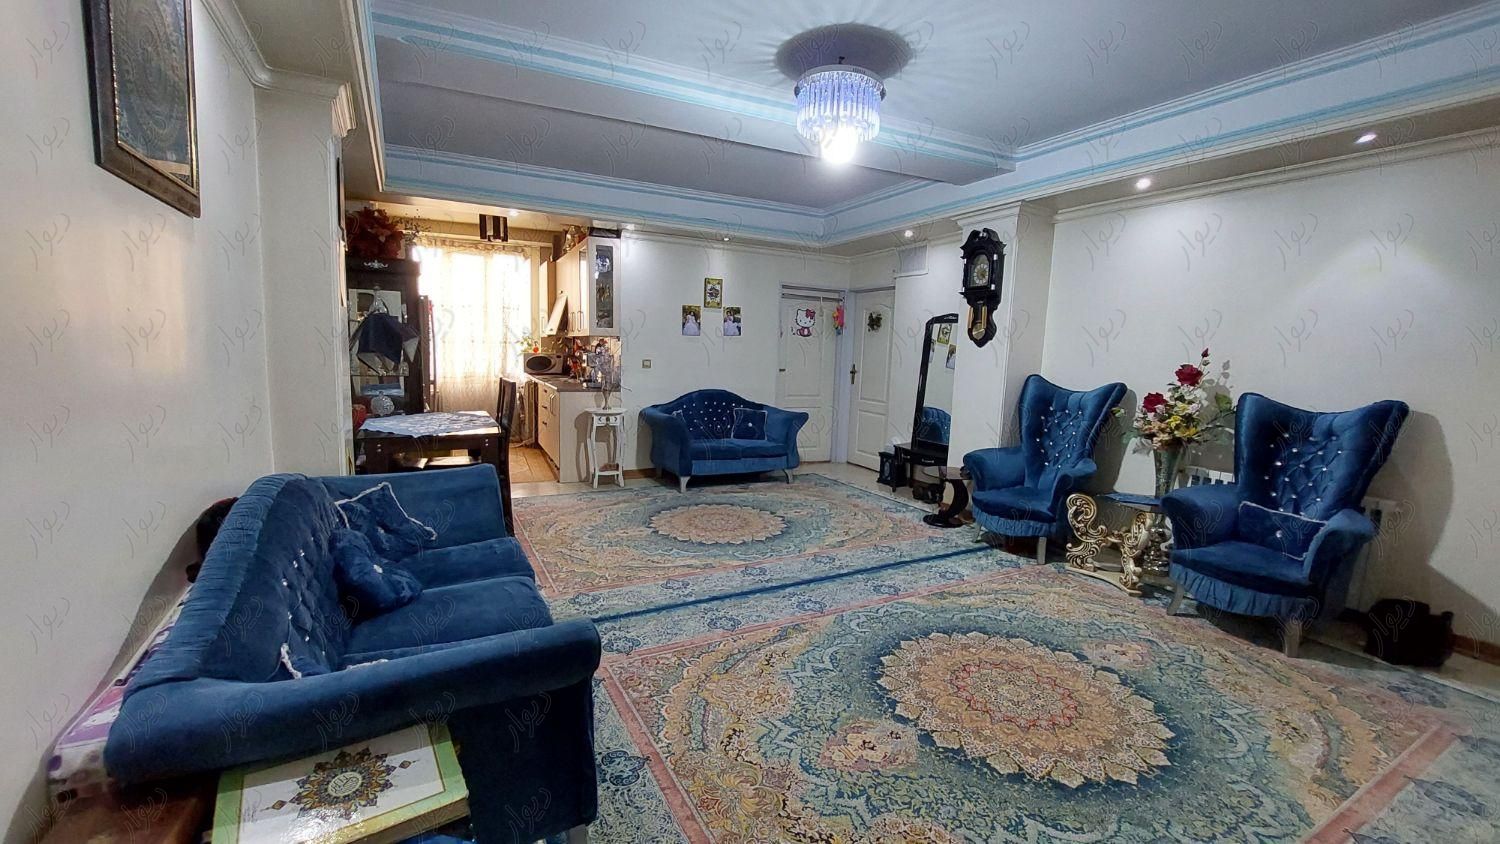 آپارتمان 66 متری ( گذر 12 )|فروش آپارتمان|تهران, شهید آوینی|دیوار